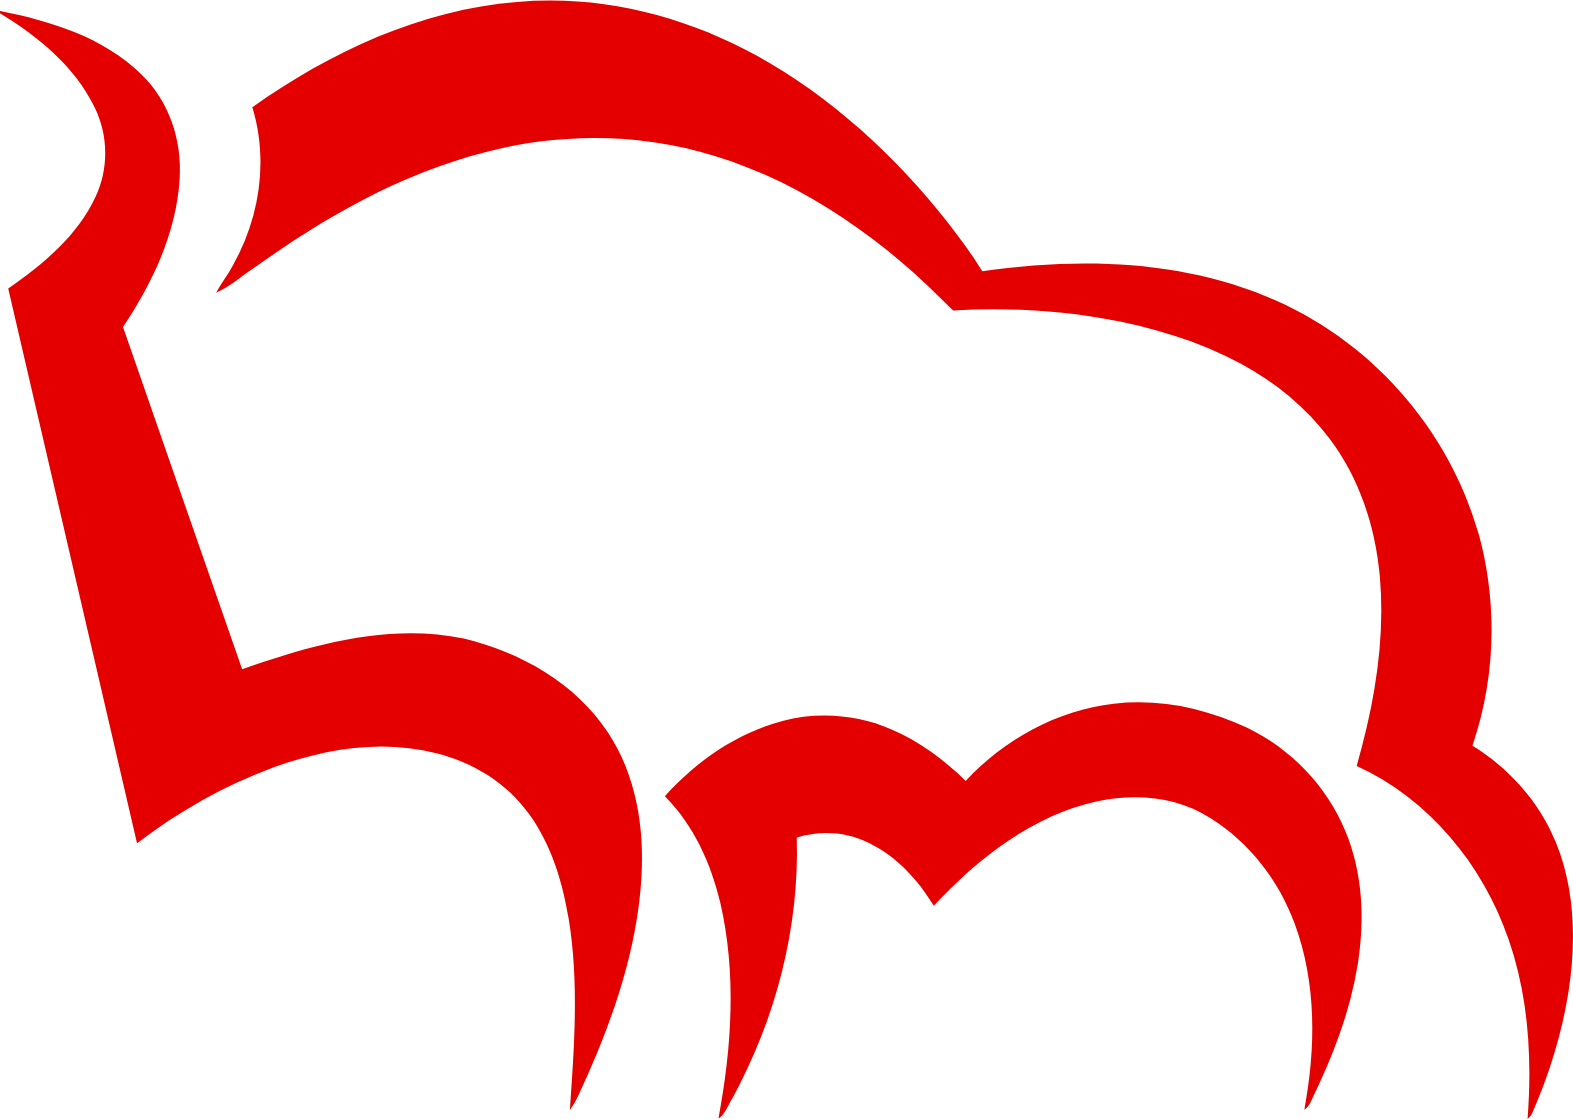 Bank Pekao (Bank Polska Kasa Opieki) logo (transparent PNG)